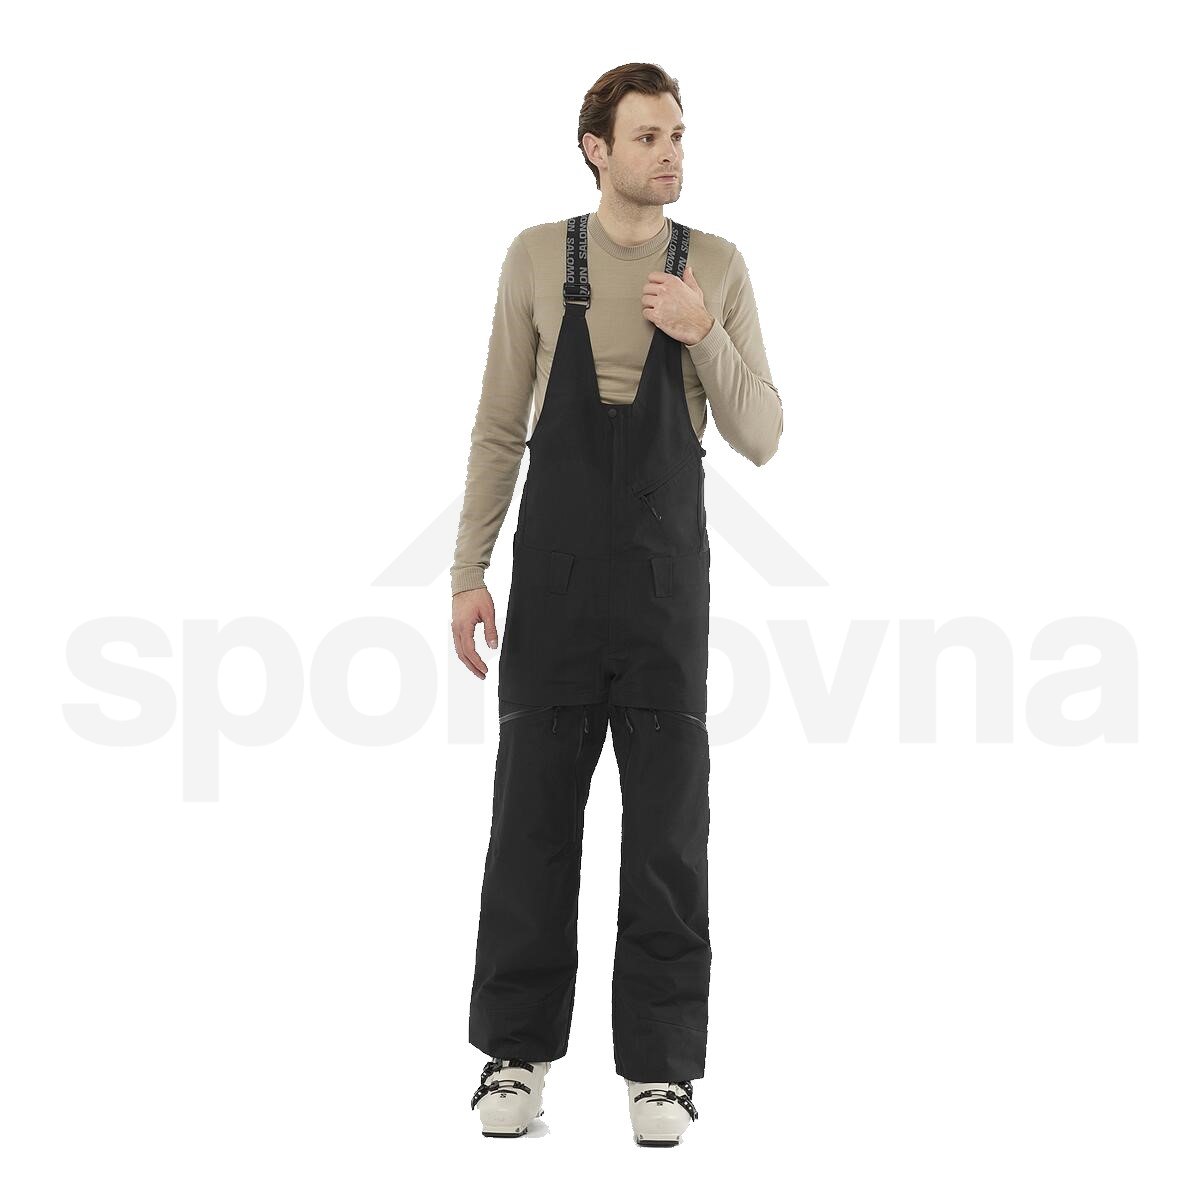 Kalhoty Salomon Stance 3L Bib Pant M - černá